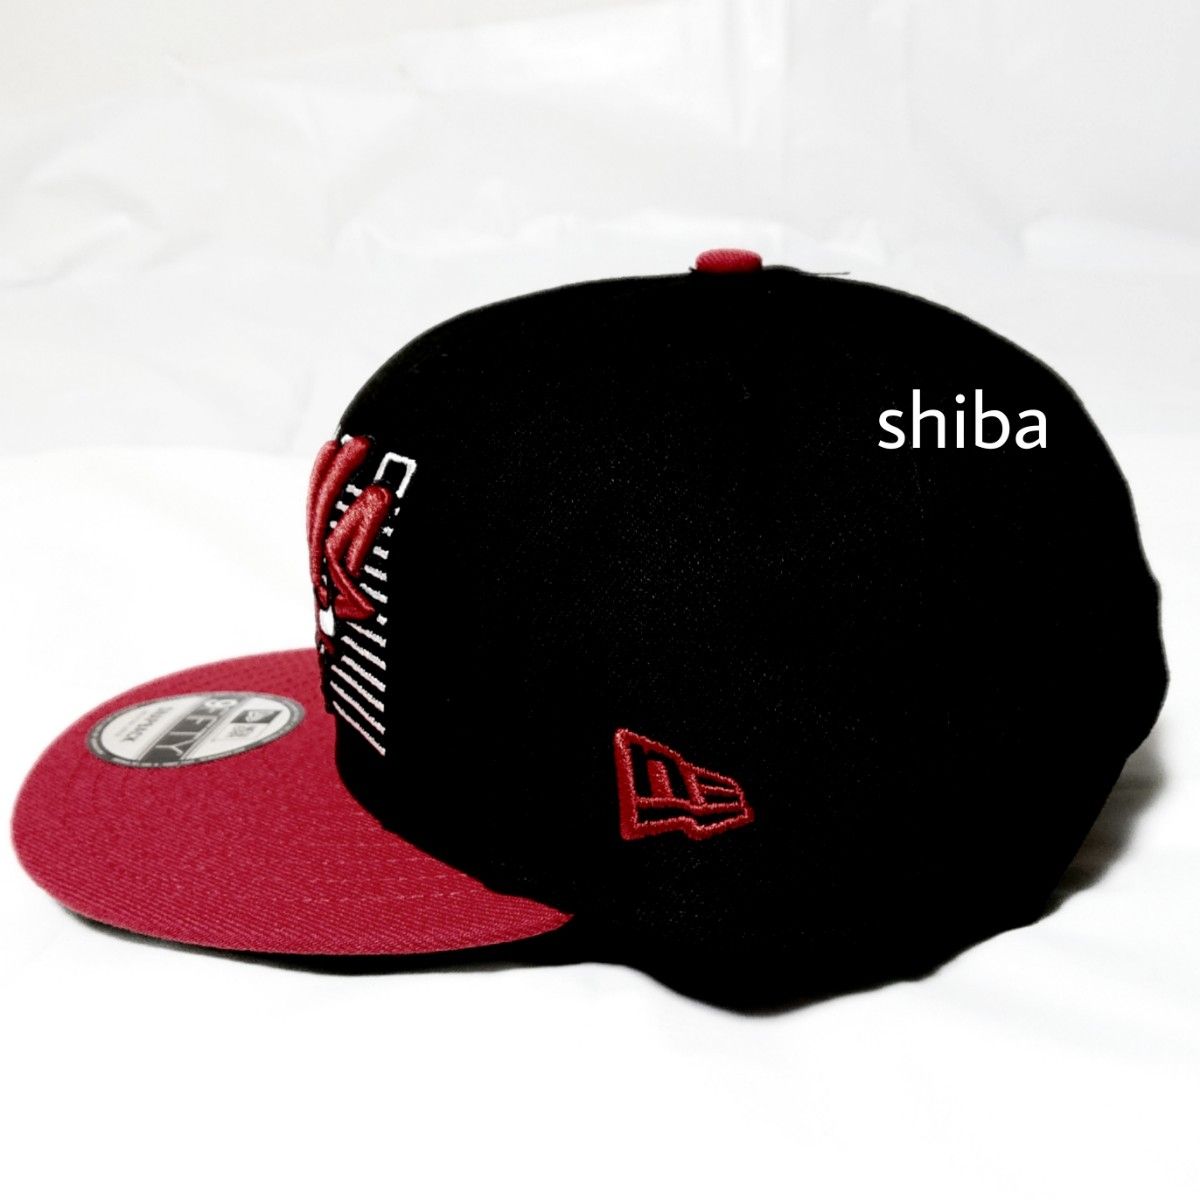 NEW ERA ニューエラ 正規品 キャップ 帽子 9FIFTY 黒 ブラック 赤 レッド NBA シカゴ ブルズ M/Lサイズ